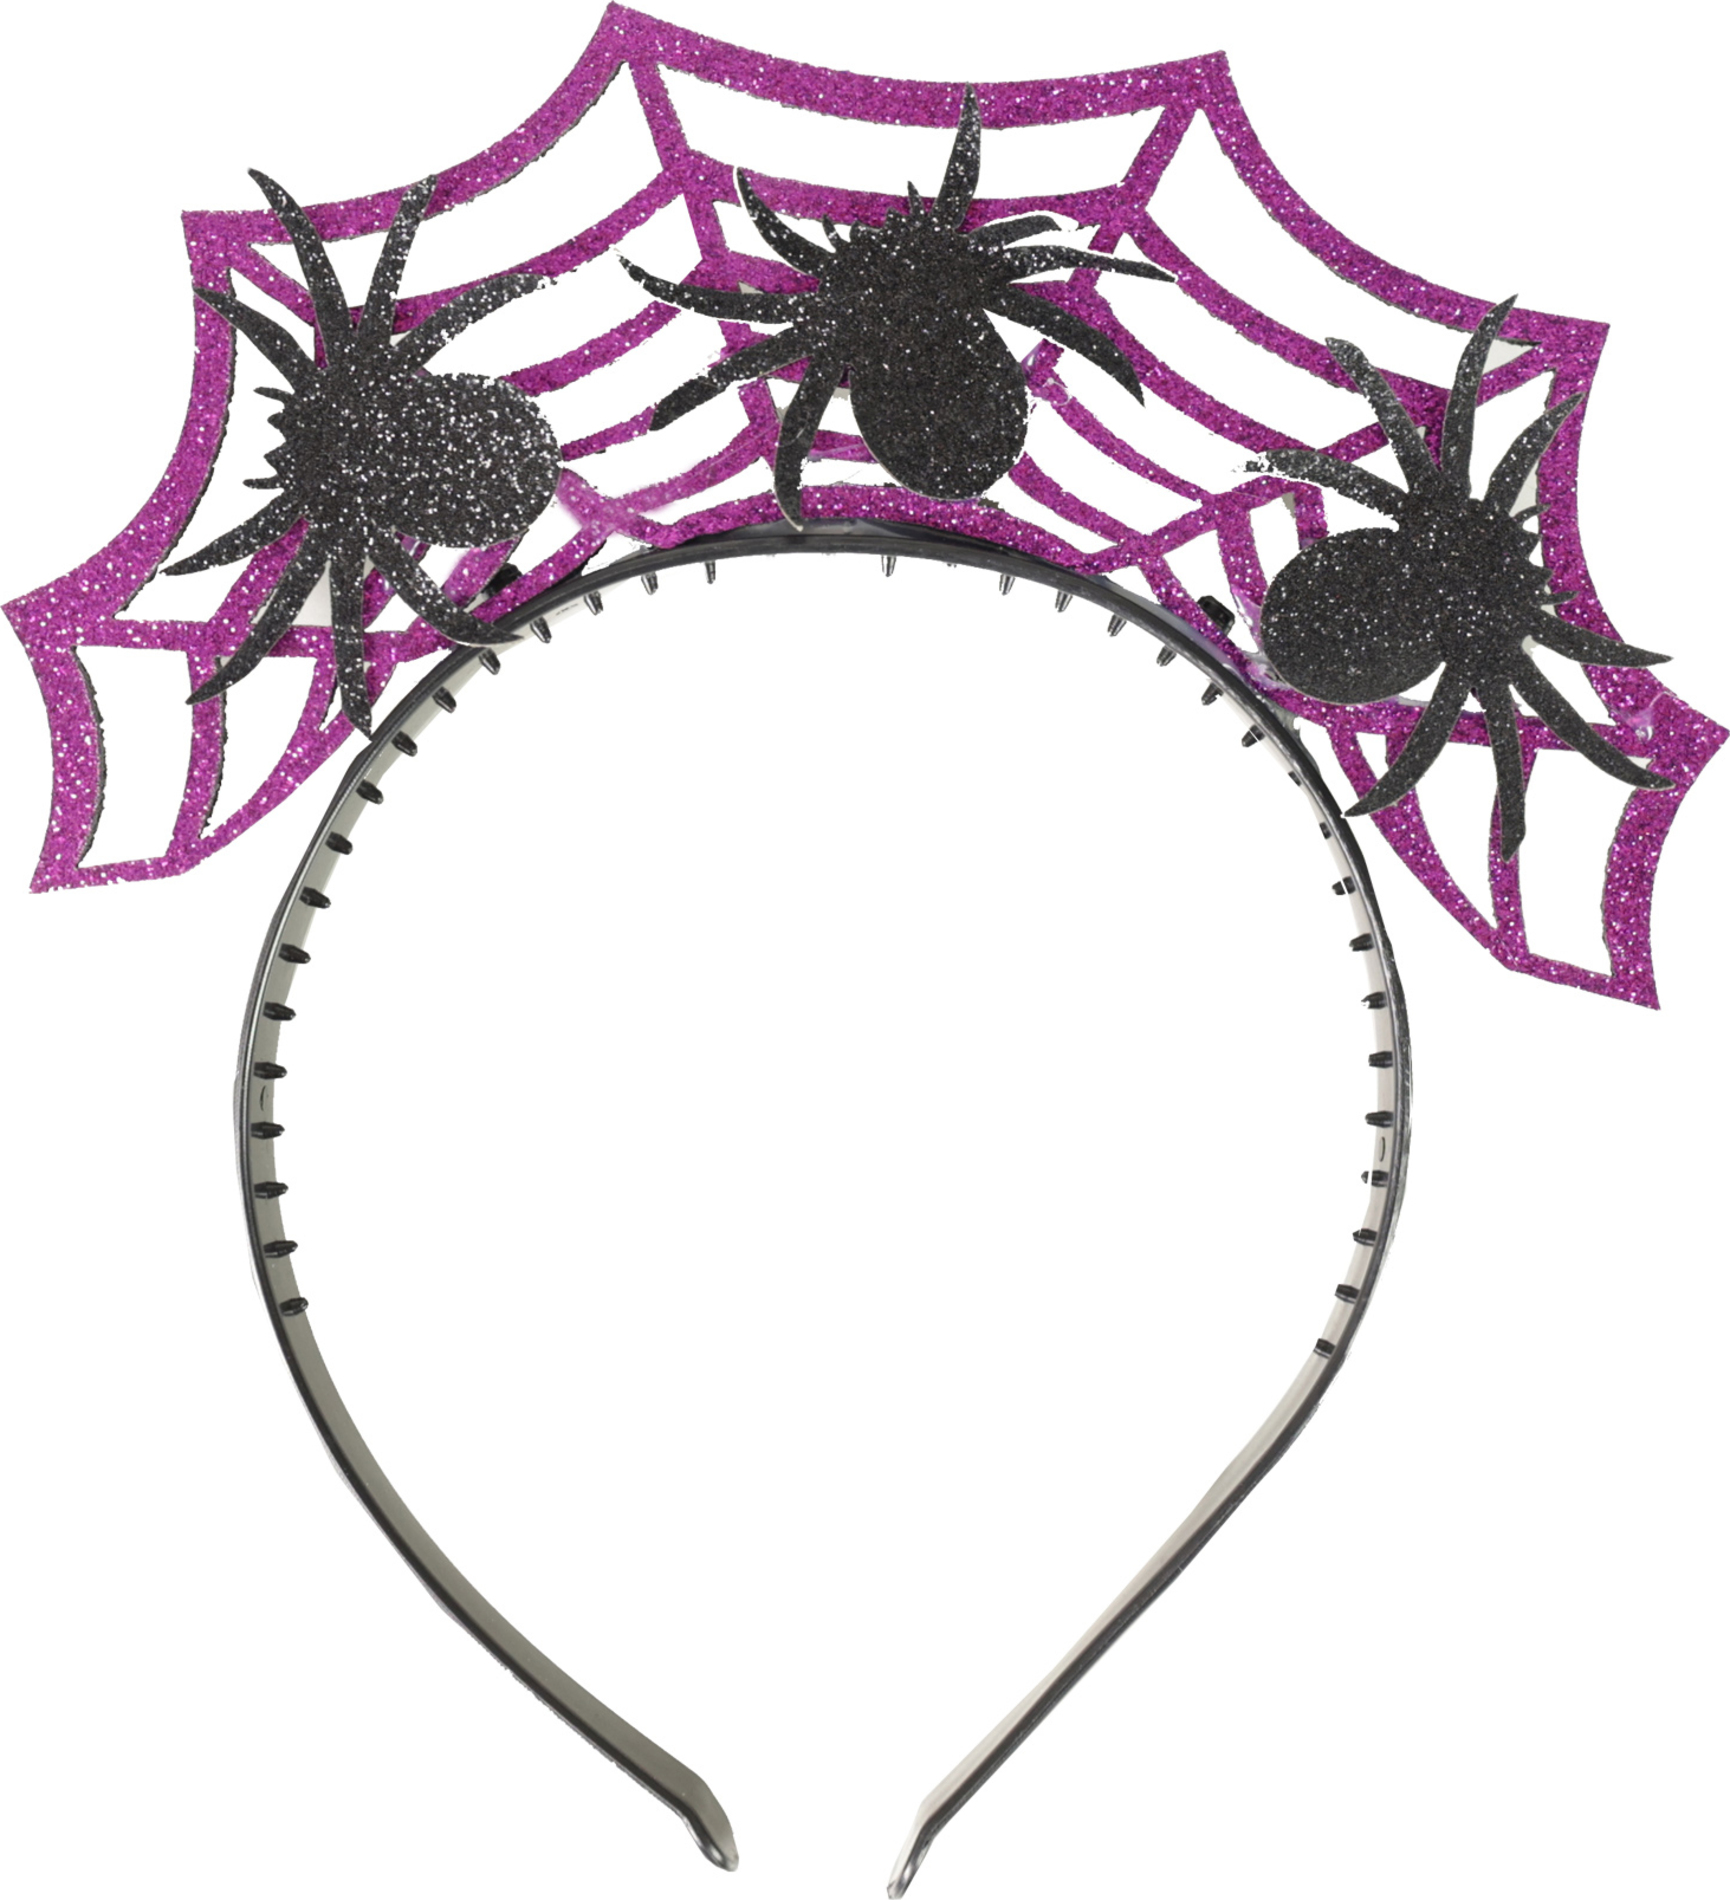 Čelenka Halloween fialová s pavouky